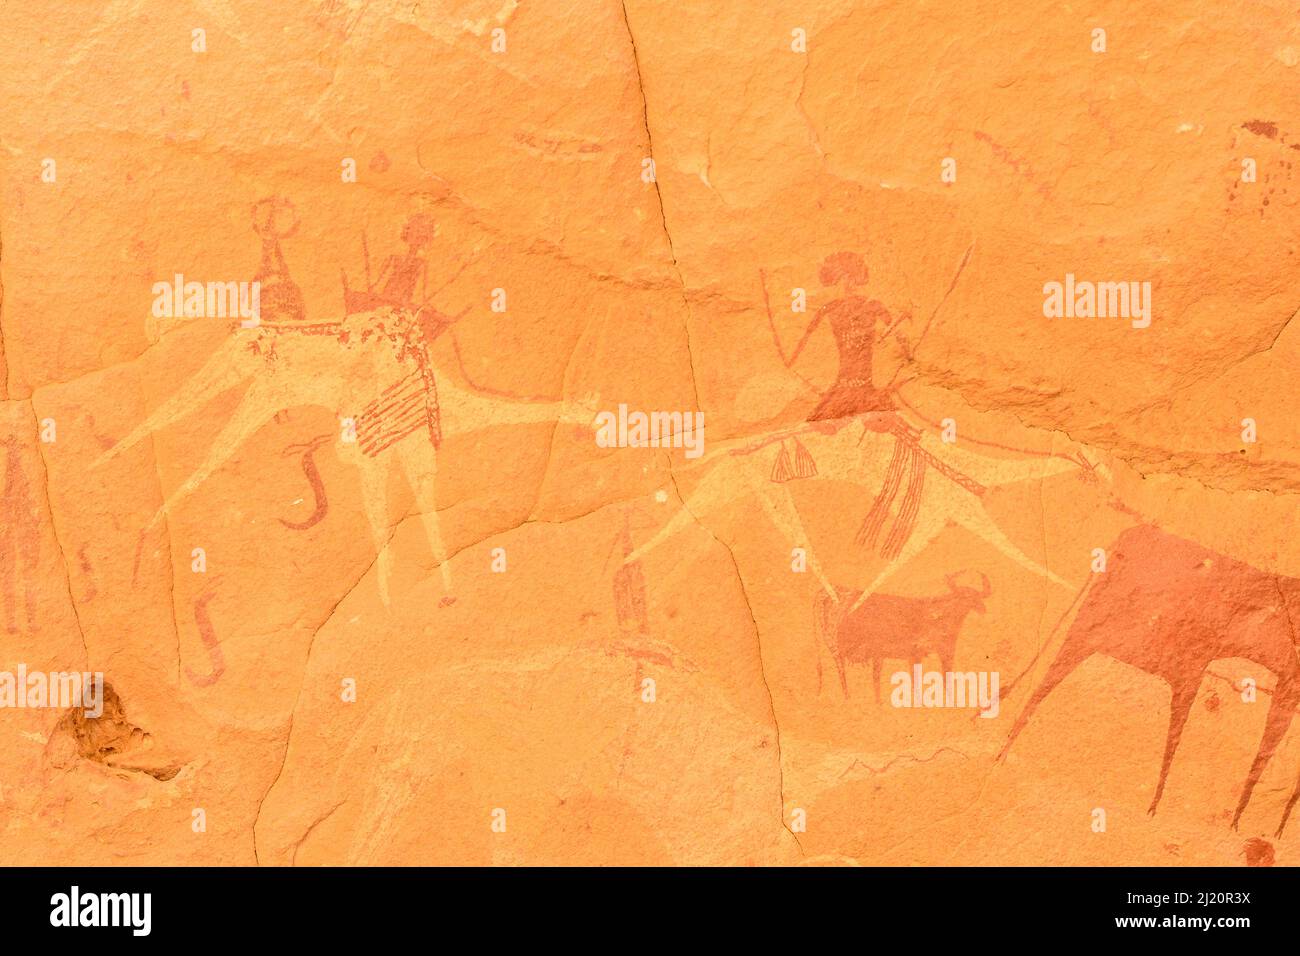 Peintures anciennes de grottes. Réserve naturelle et culturelle Ennedi, site du patrimoine mondial de l'UNESCO, Tchad. Septembre 2019. Banque D'Images